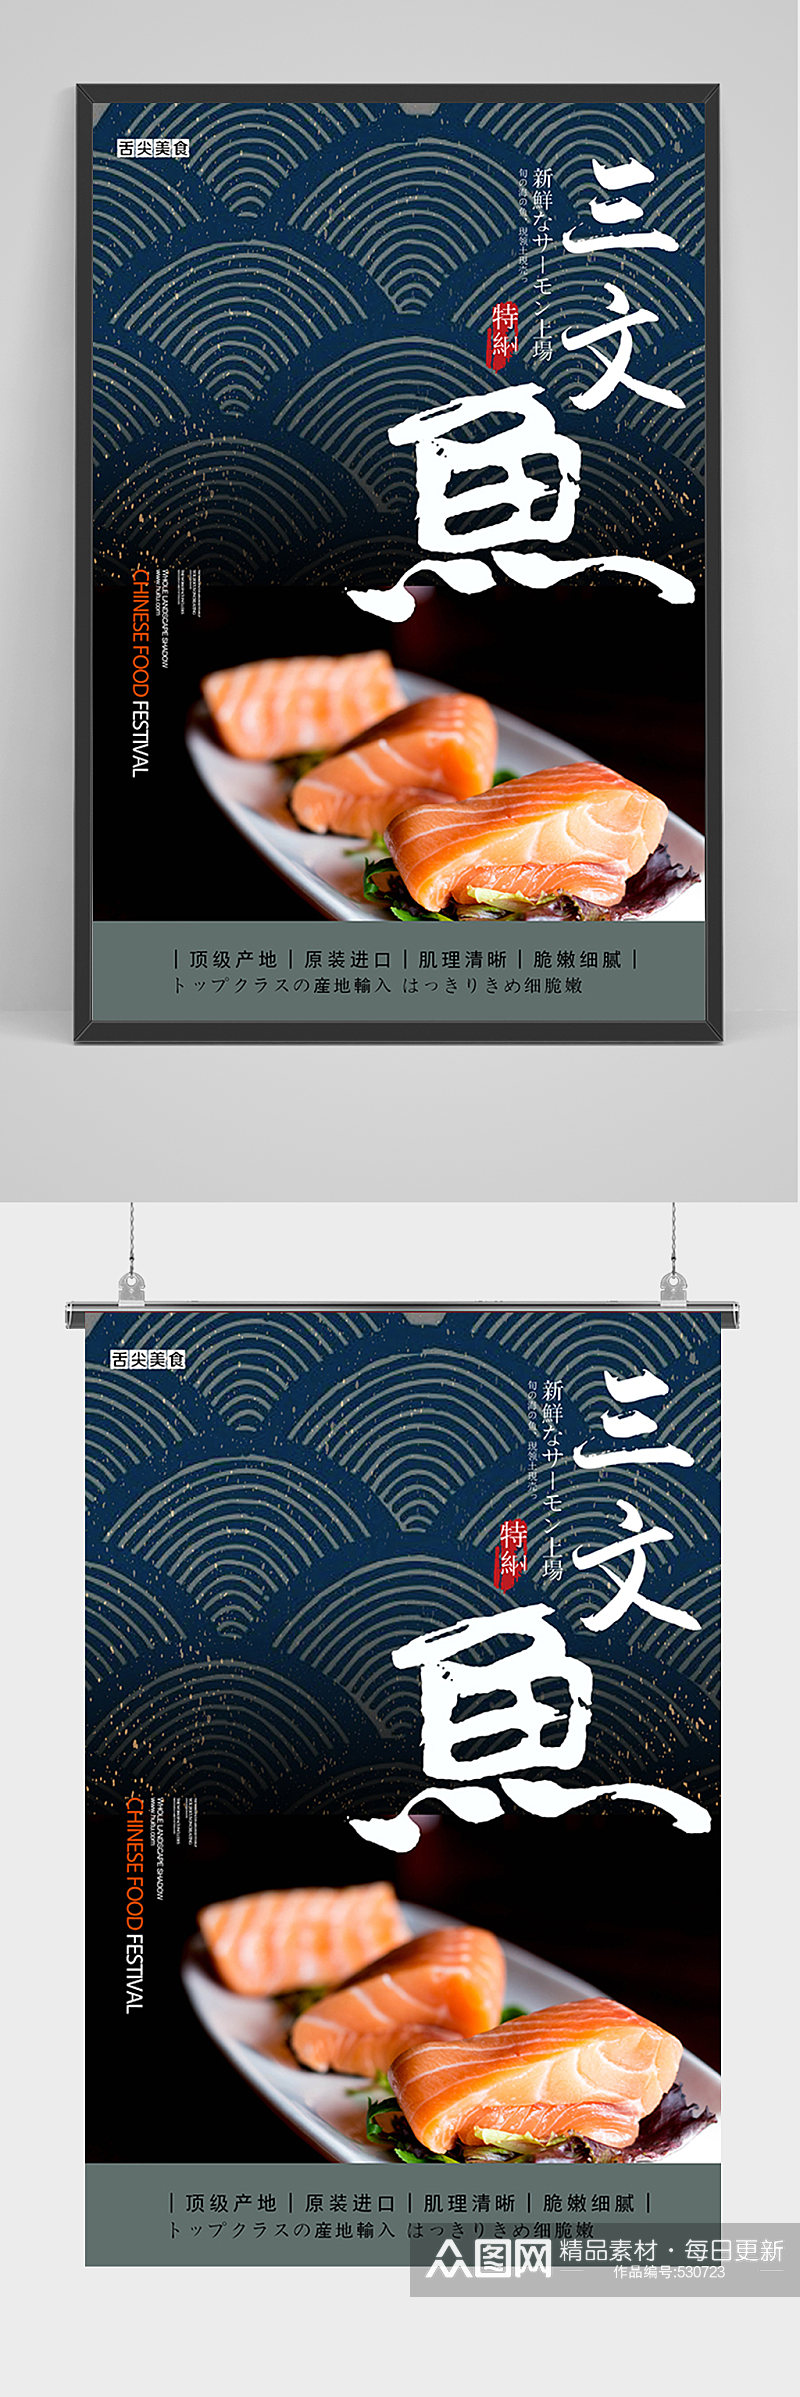 简洁三文鱼促销宣传海报素材